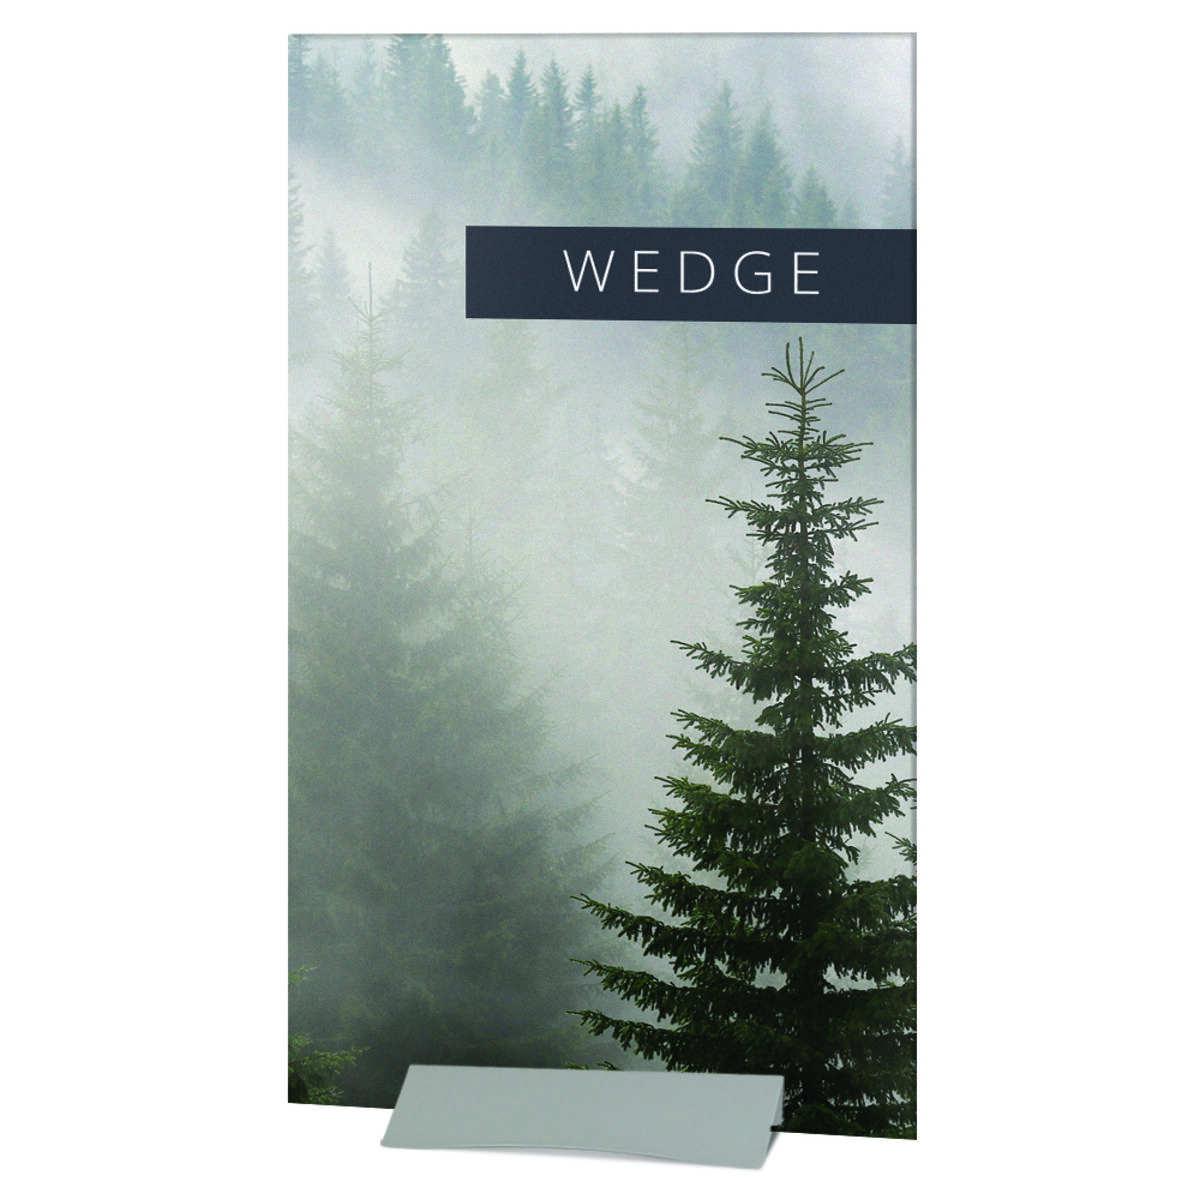 wedge-81640.jpg